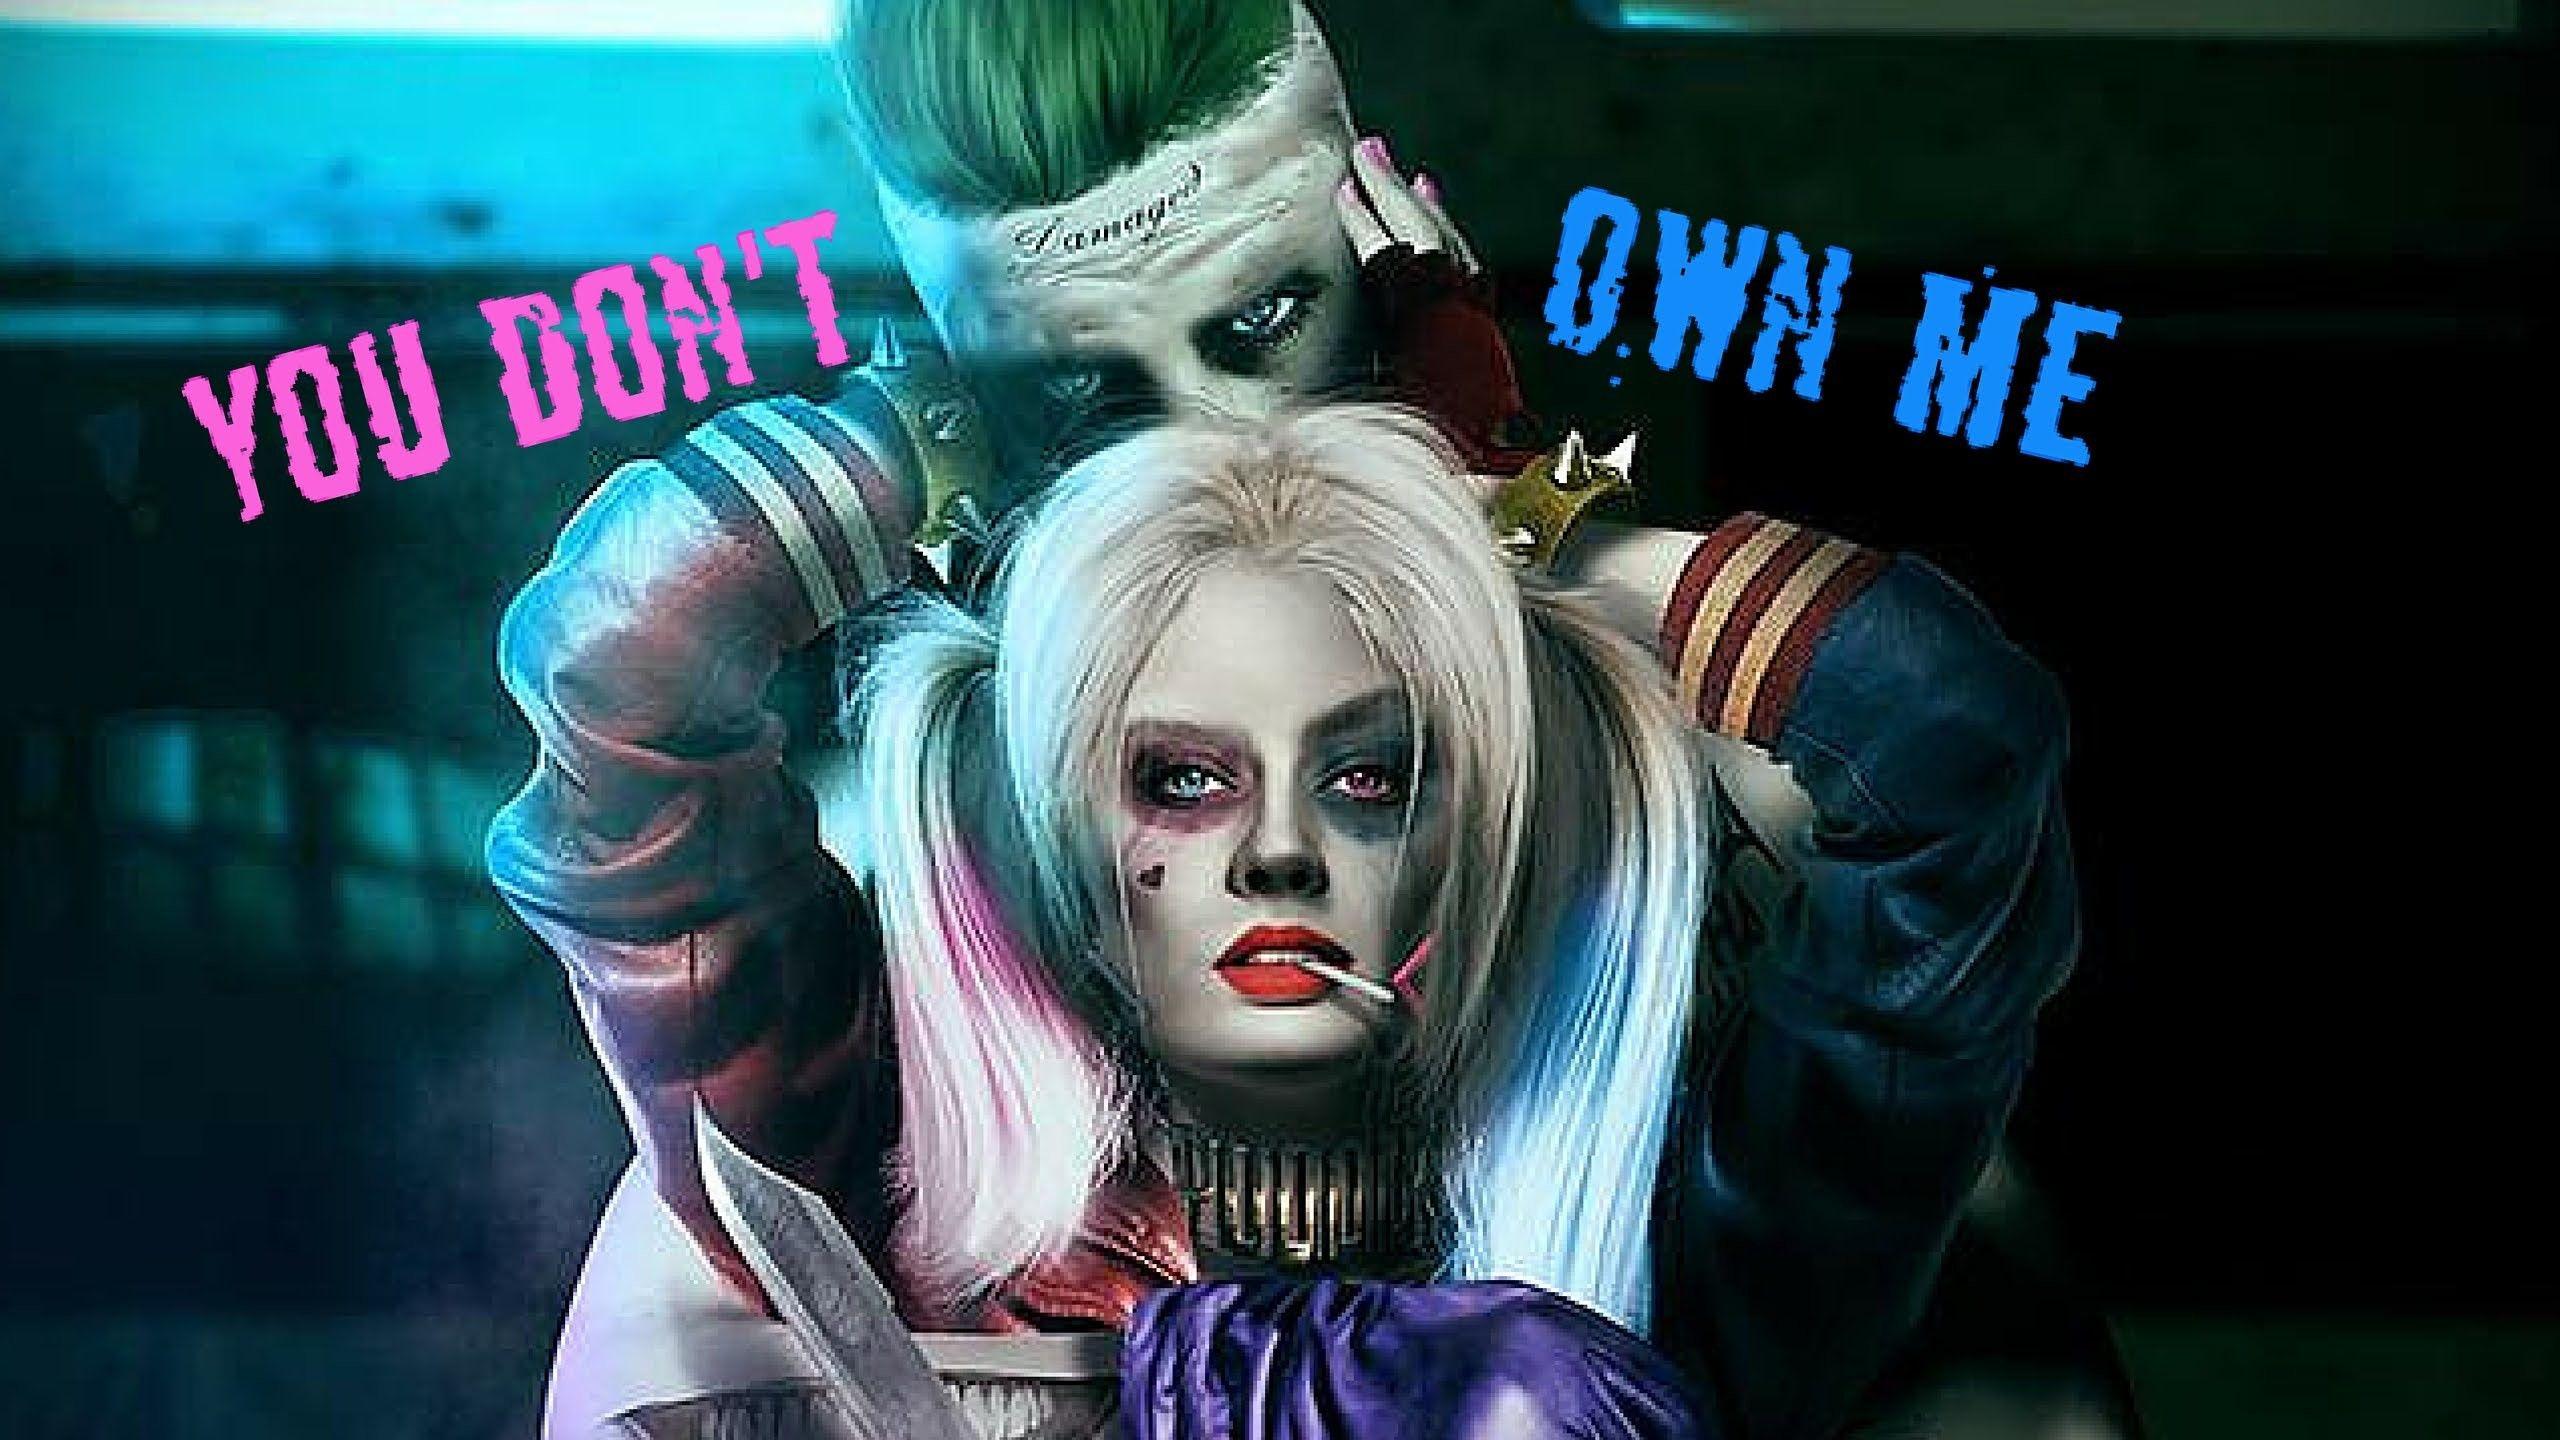 Joker and Harley Quinn Wallpaper Free Joker and Harley Quinn